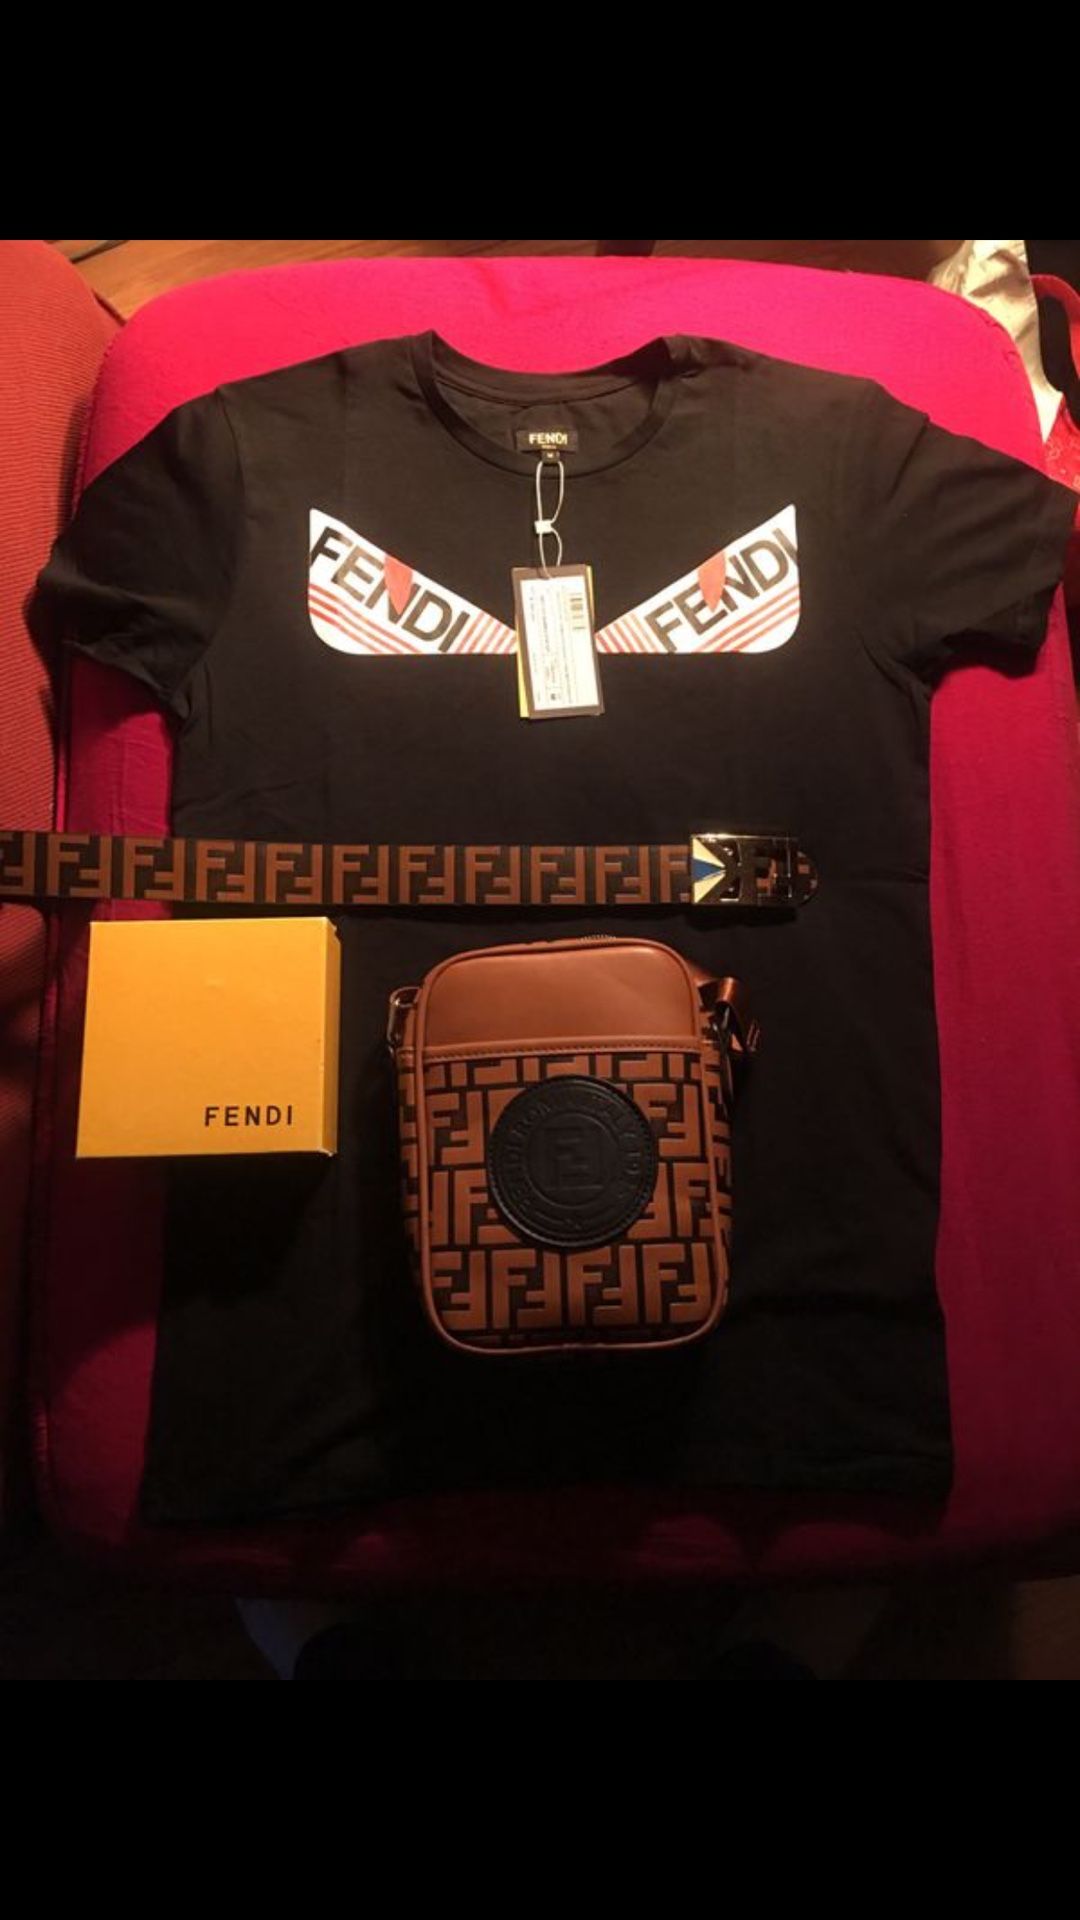 Authentic Fendi shirt belt and bag